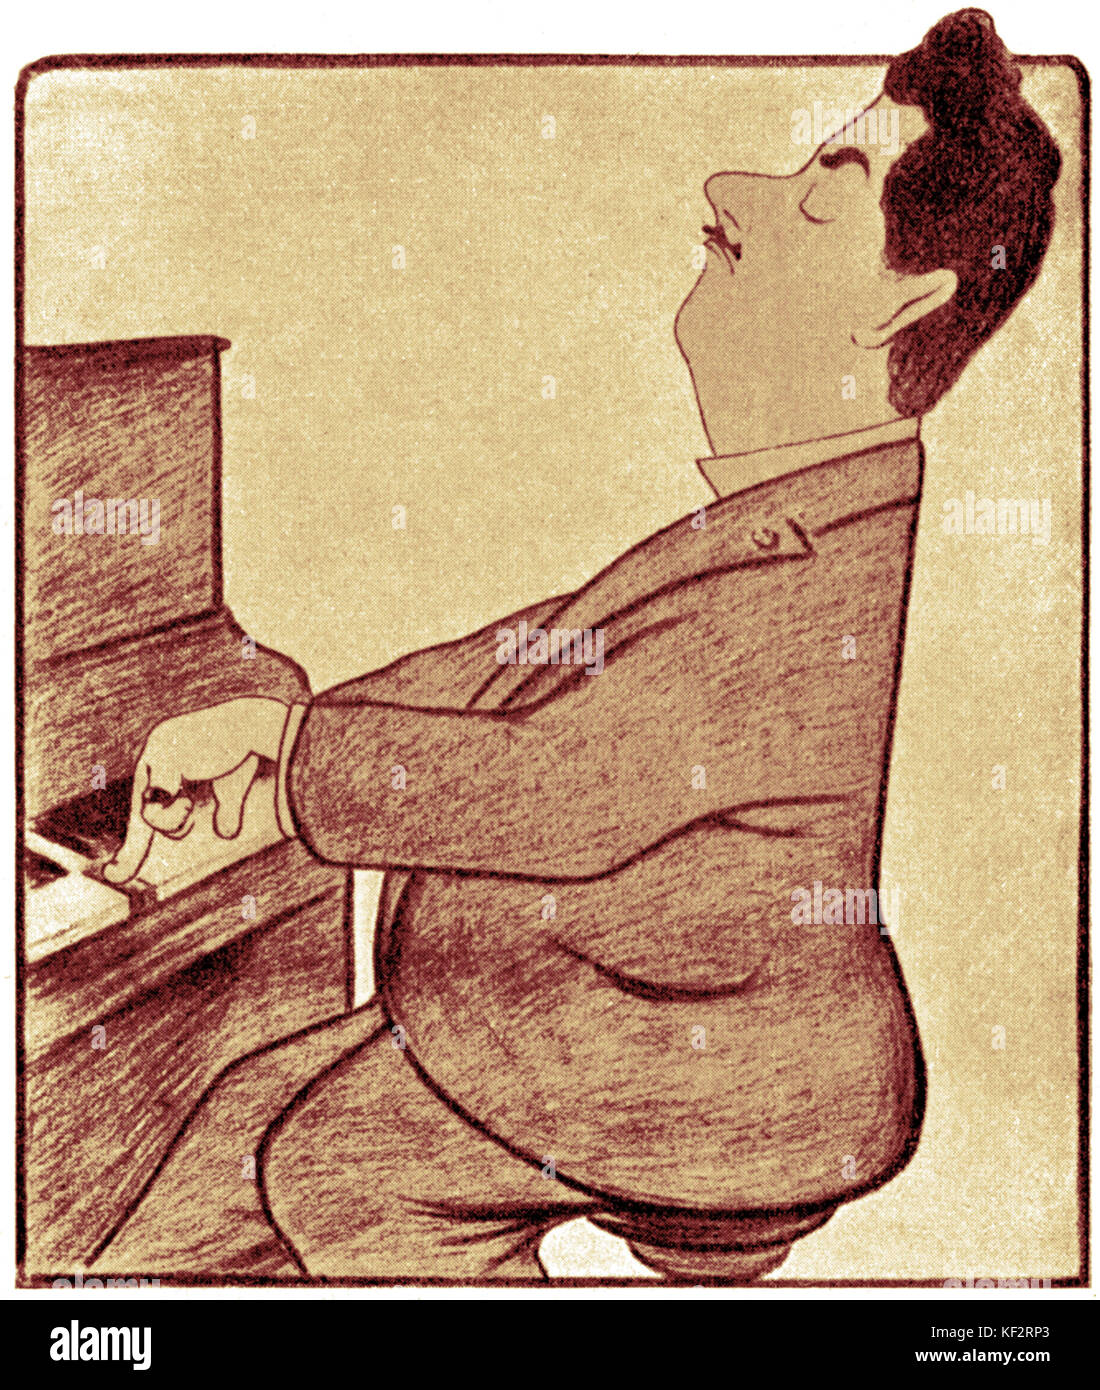 Puccini am Klavier, Karikatur von L Cappiello italienischer Komponist, 1858-1924. Stockfoto